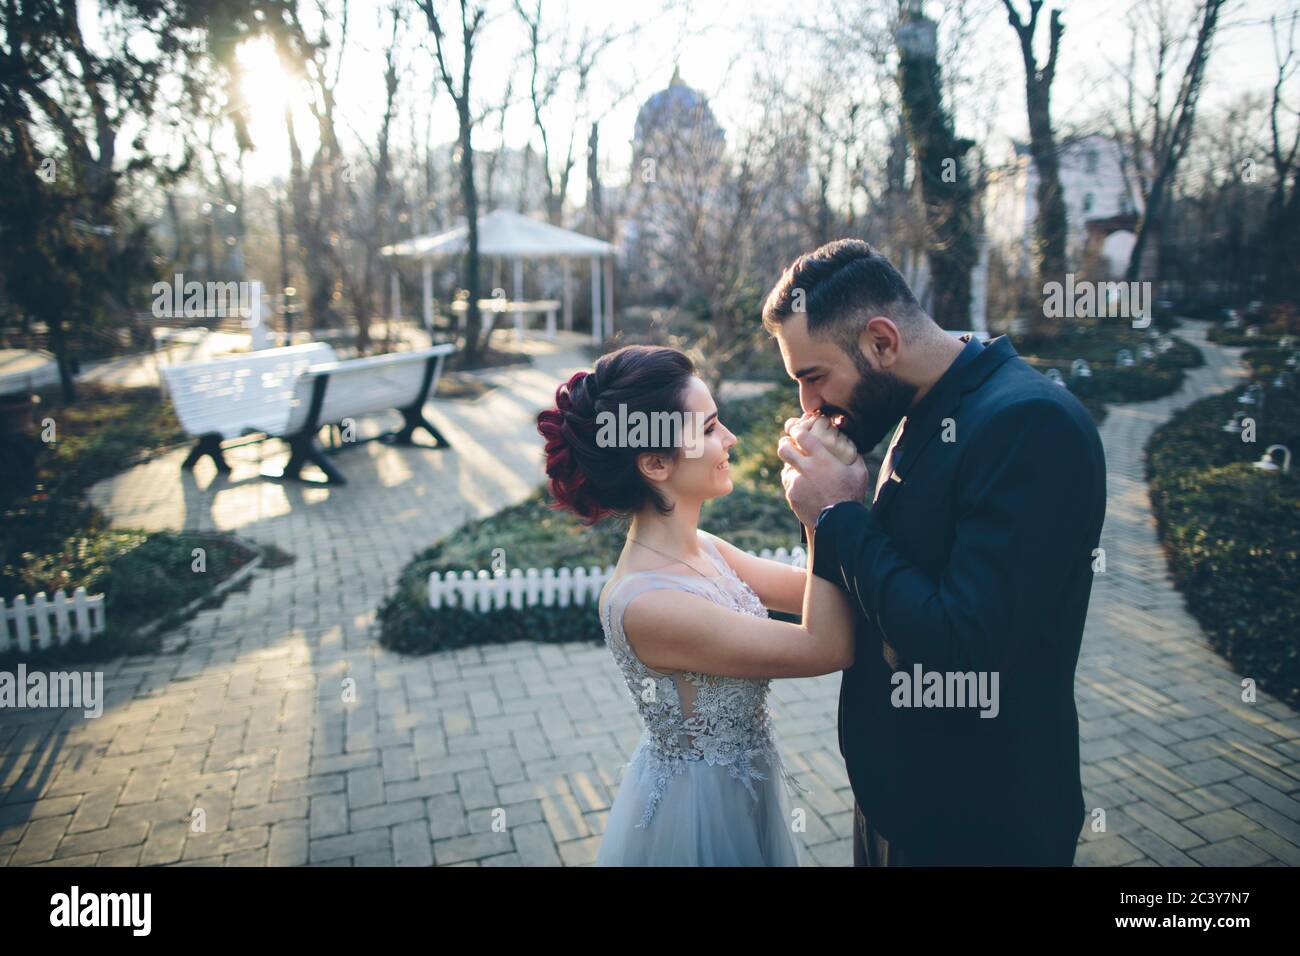 Novio besando las manos de su esposa recién casada en el jardín Foto de stock